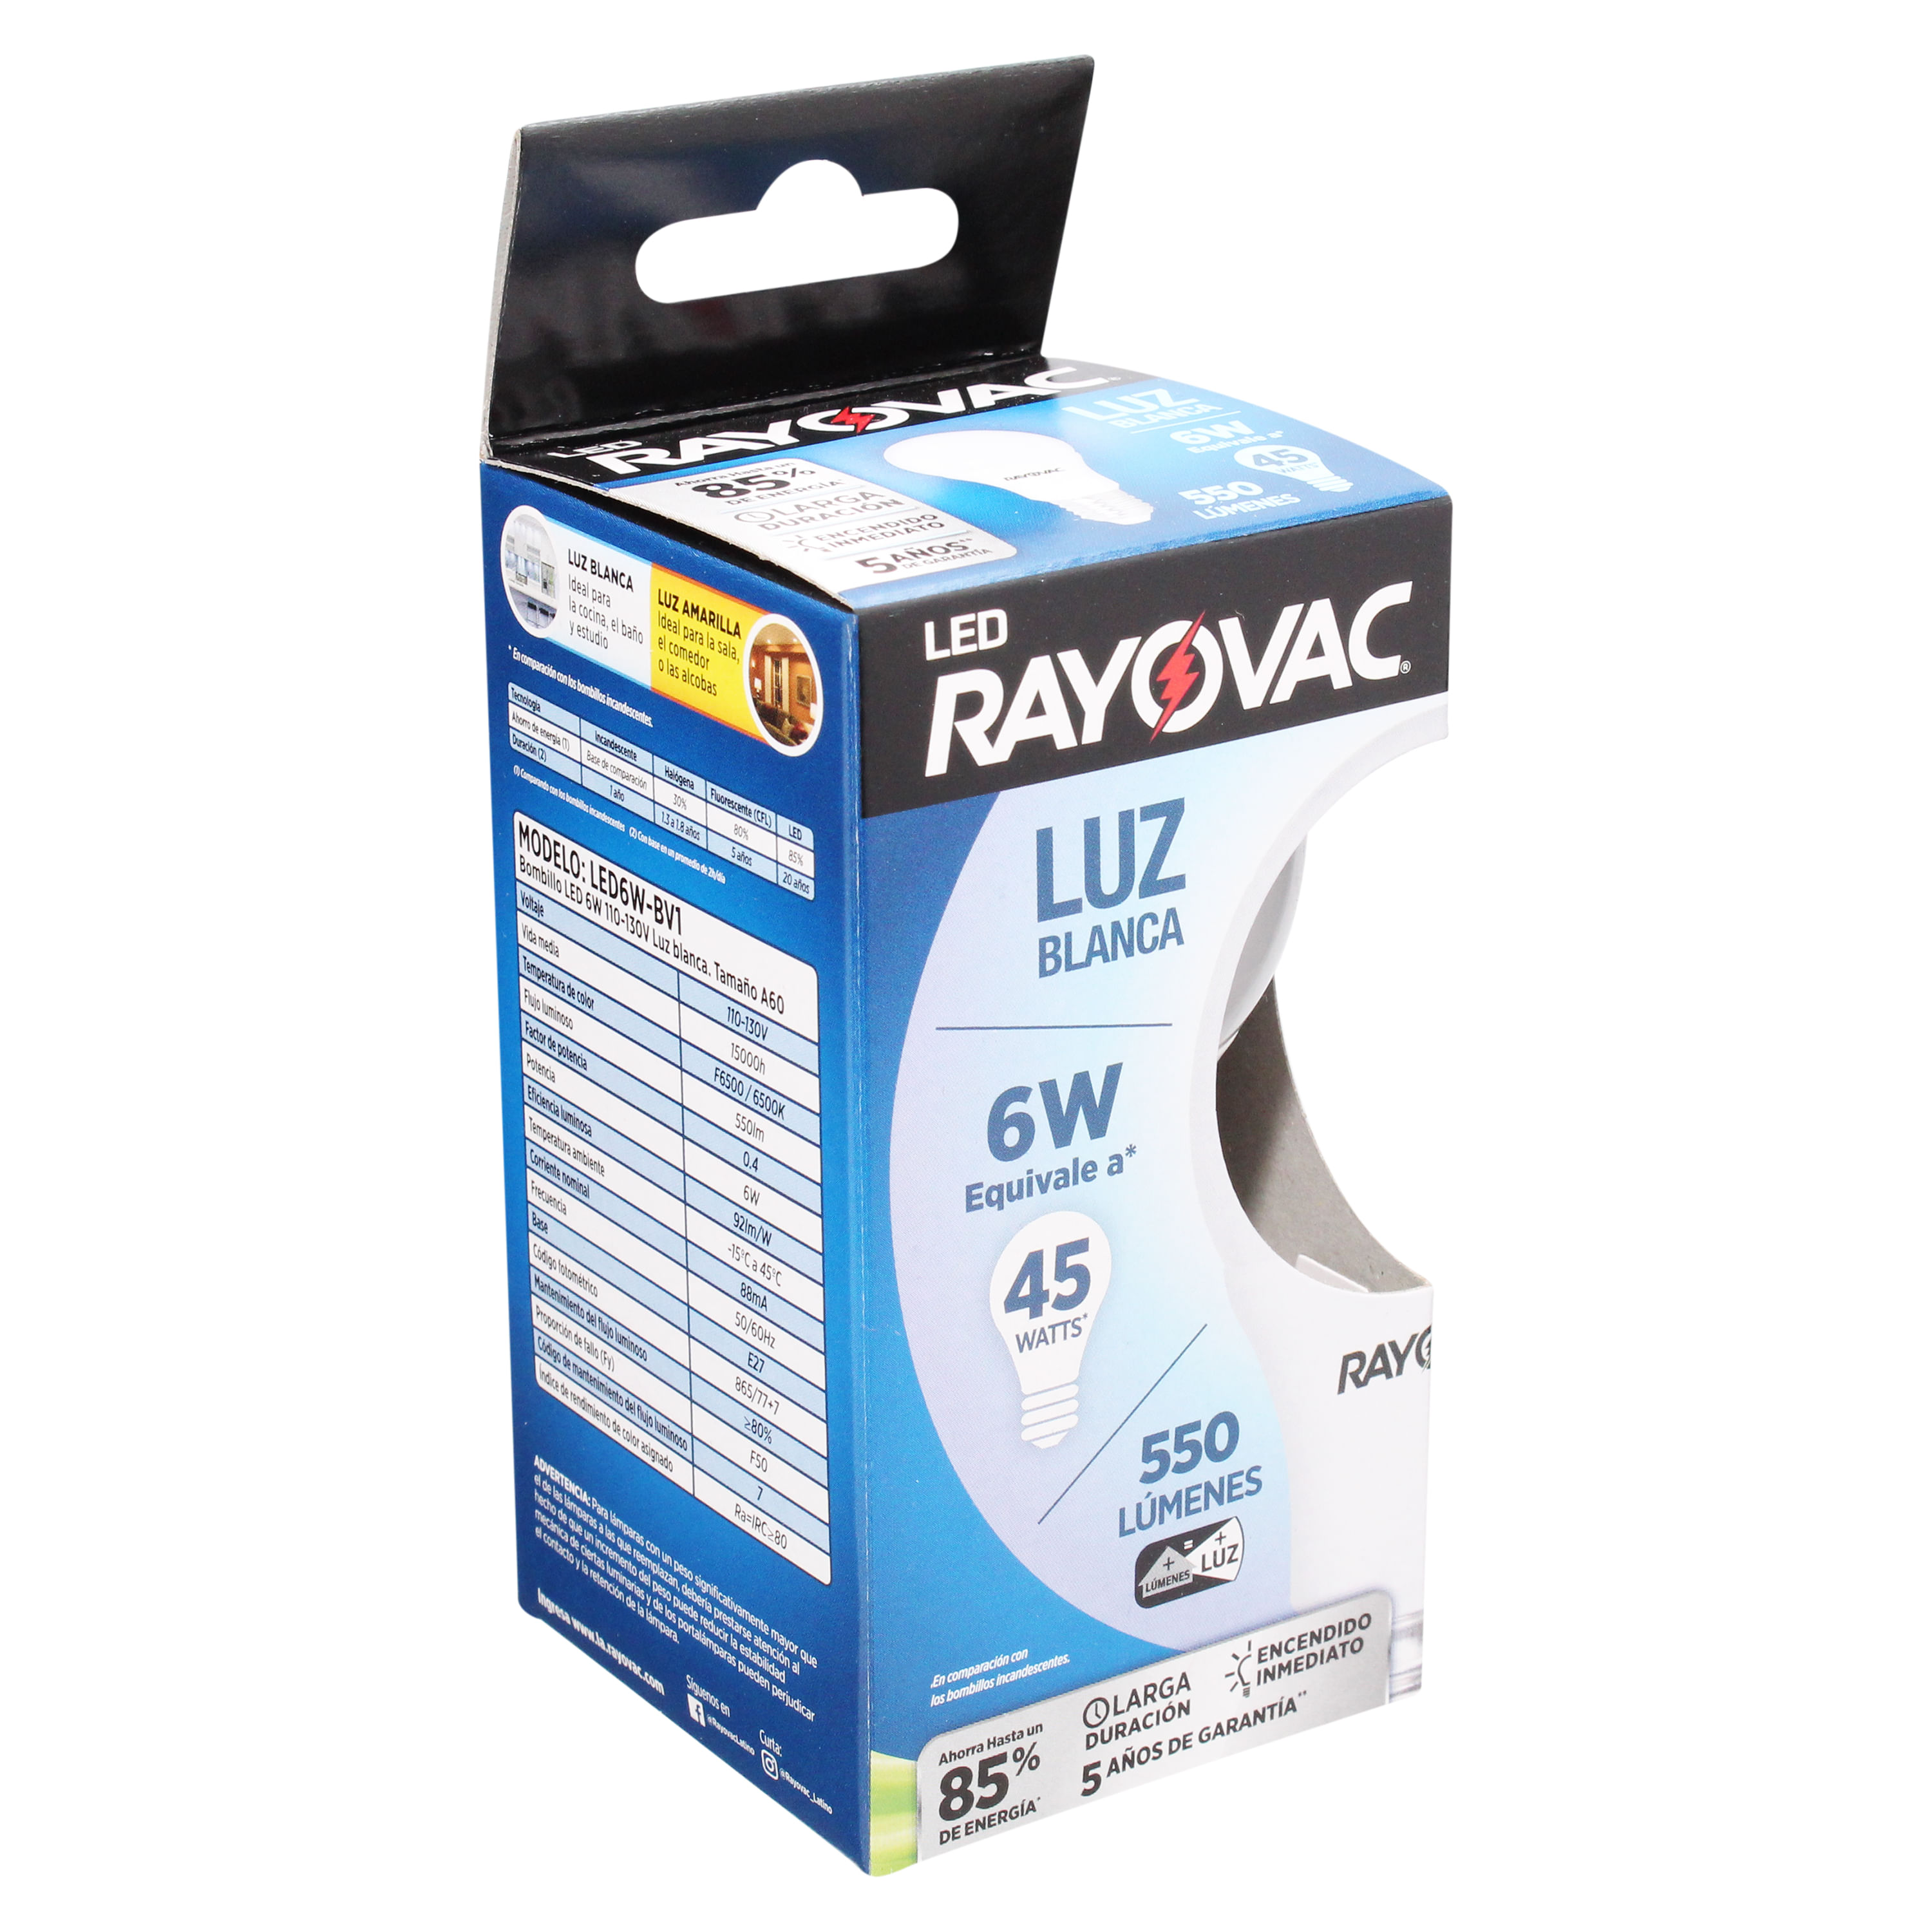 Comprar Rayovac Led 6W Blanco Caja Tray